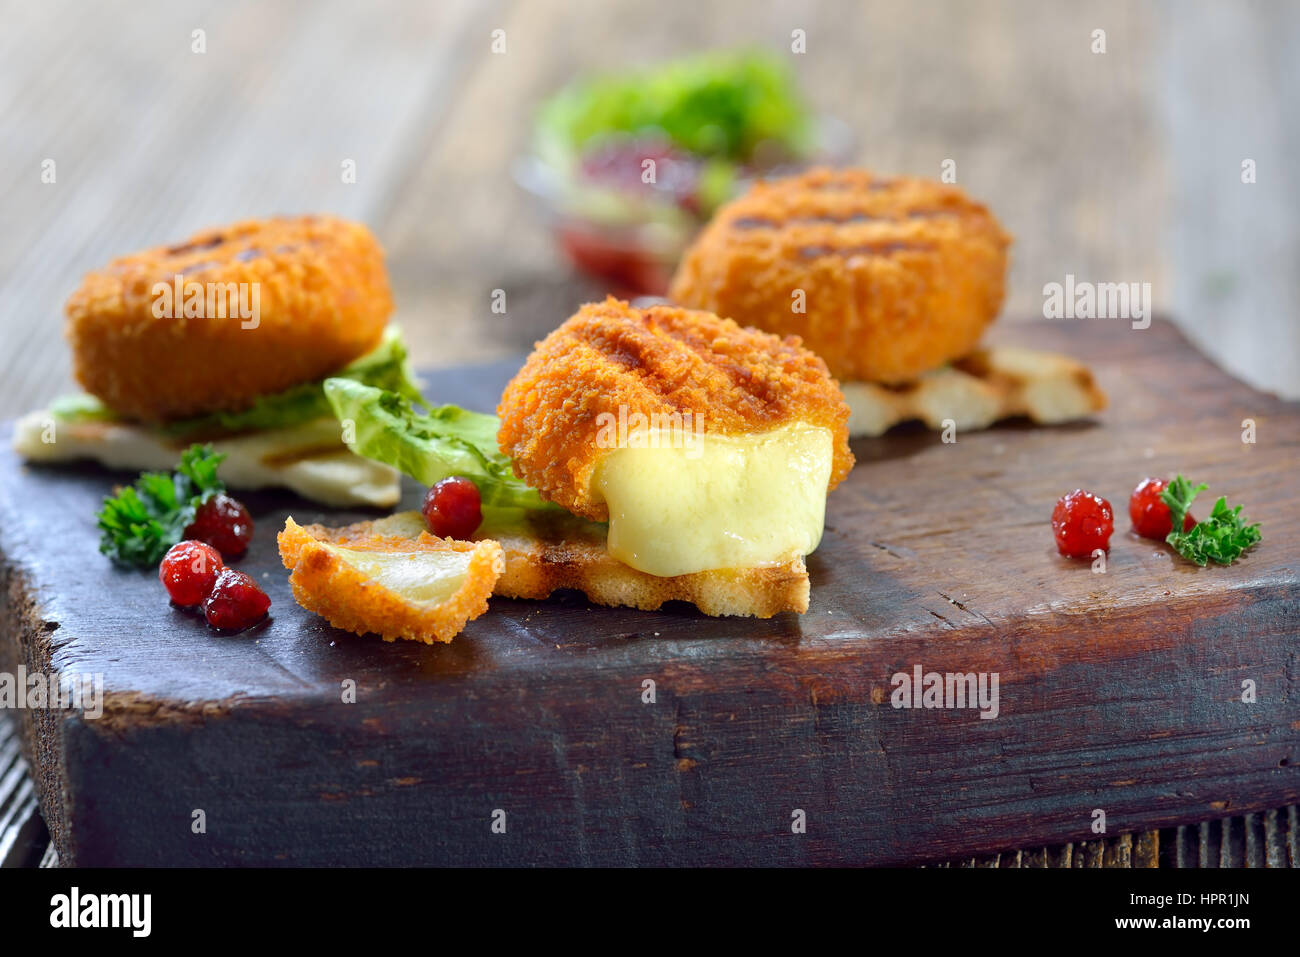 Tostare panini triangoli con mini panato formaggio camembert pani, mirtilli e lattuga iceberg servita su un tagliere di legno Foto Stock